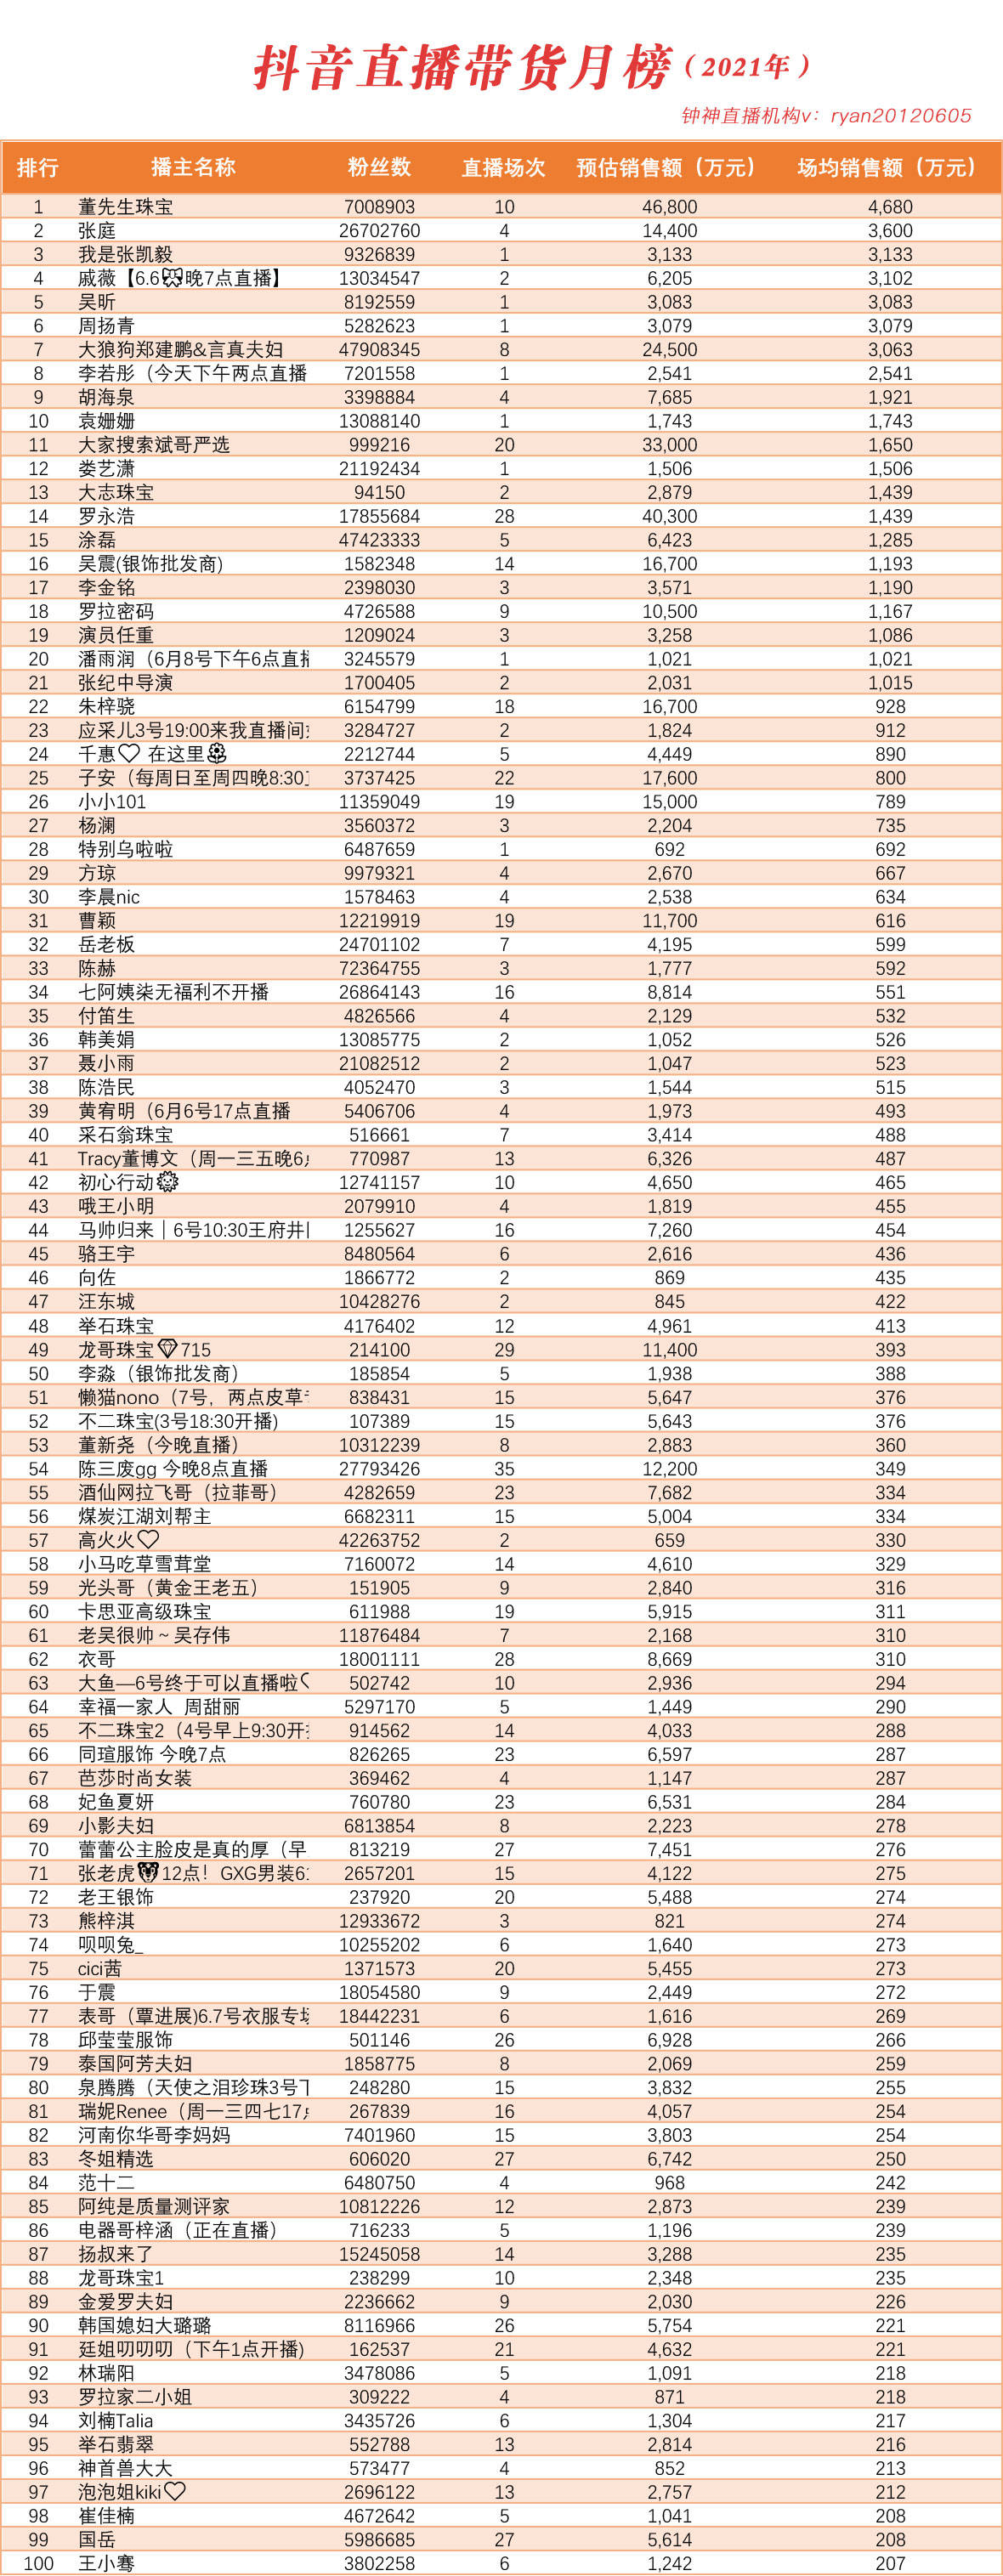 凤凰好书榜 2014年4月榜_读书频道_凤凰网_yy频道人气排行榜_yy怎么看总榜和日榜